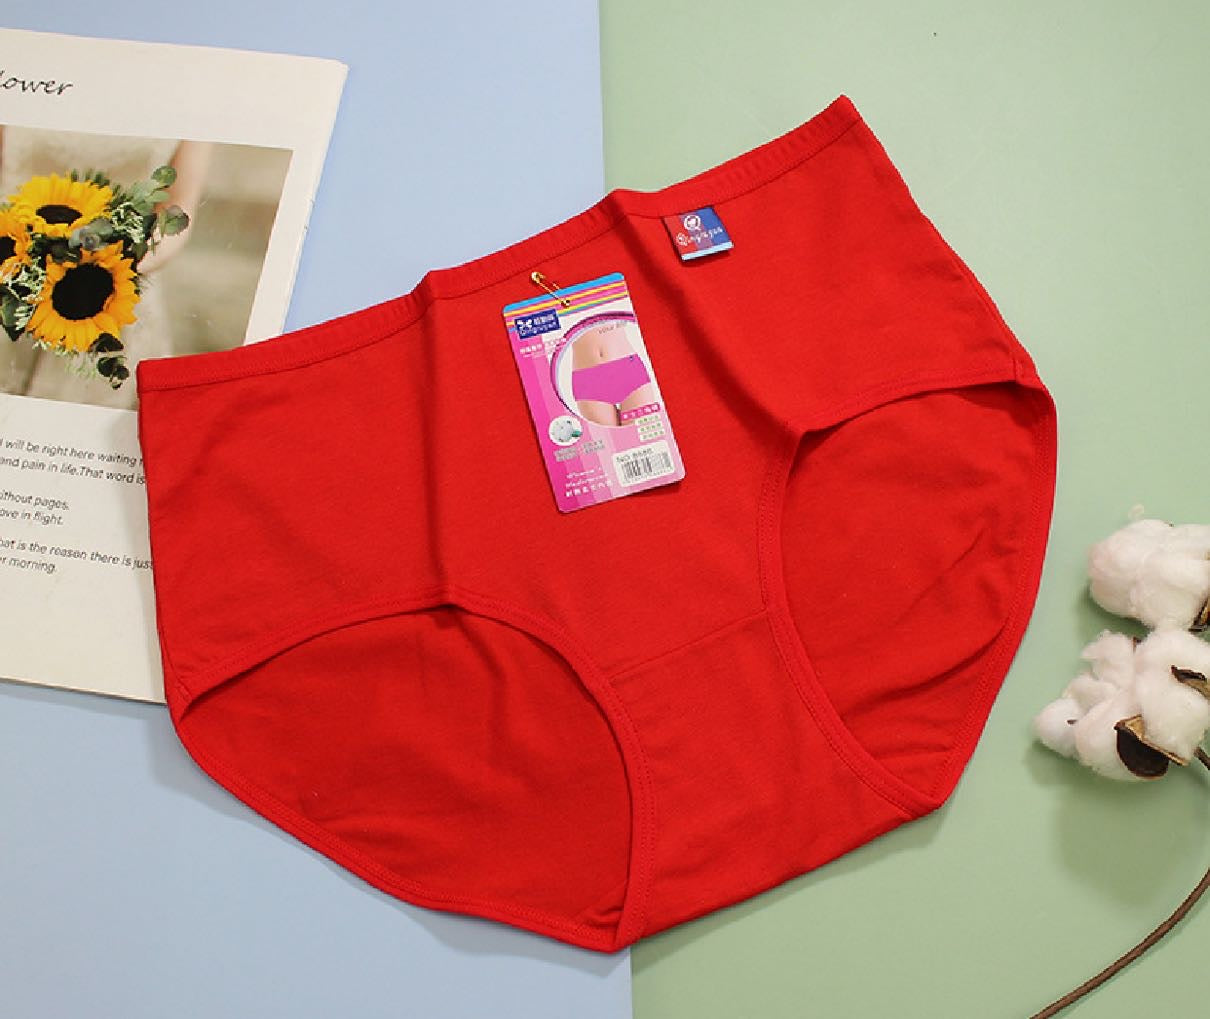 Buy Wholesale High Waist Postpartum Underwear Women Cotton